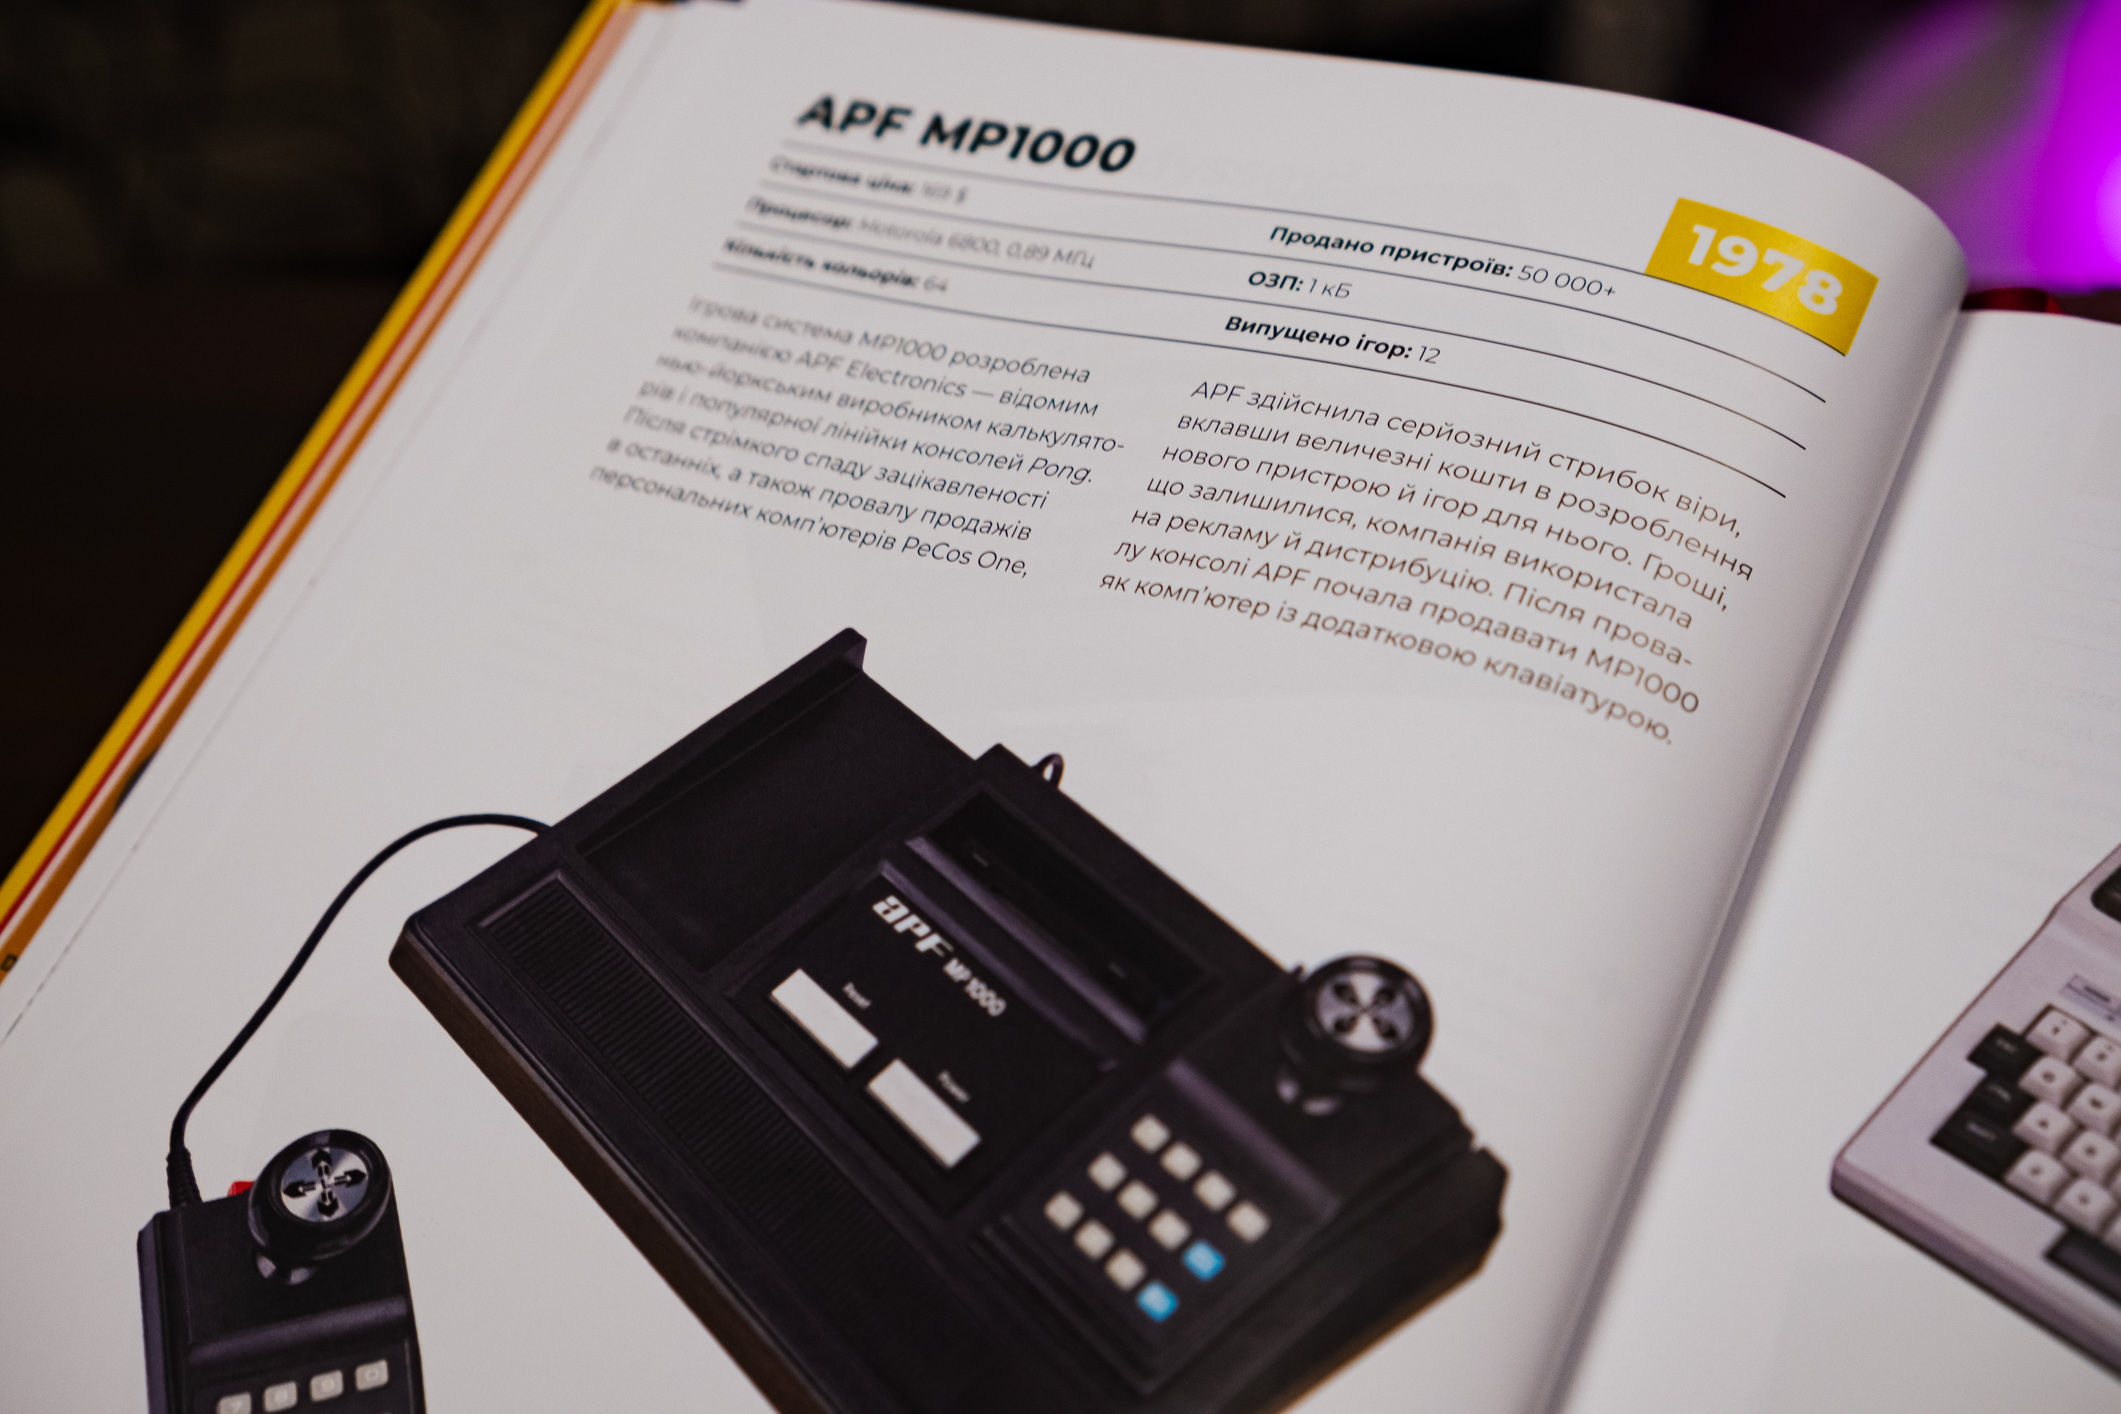 Обзор артбука «Игровые консоли 2.0: История в фотографиях от Atari до Xbox»